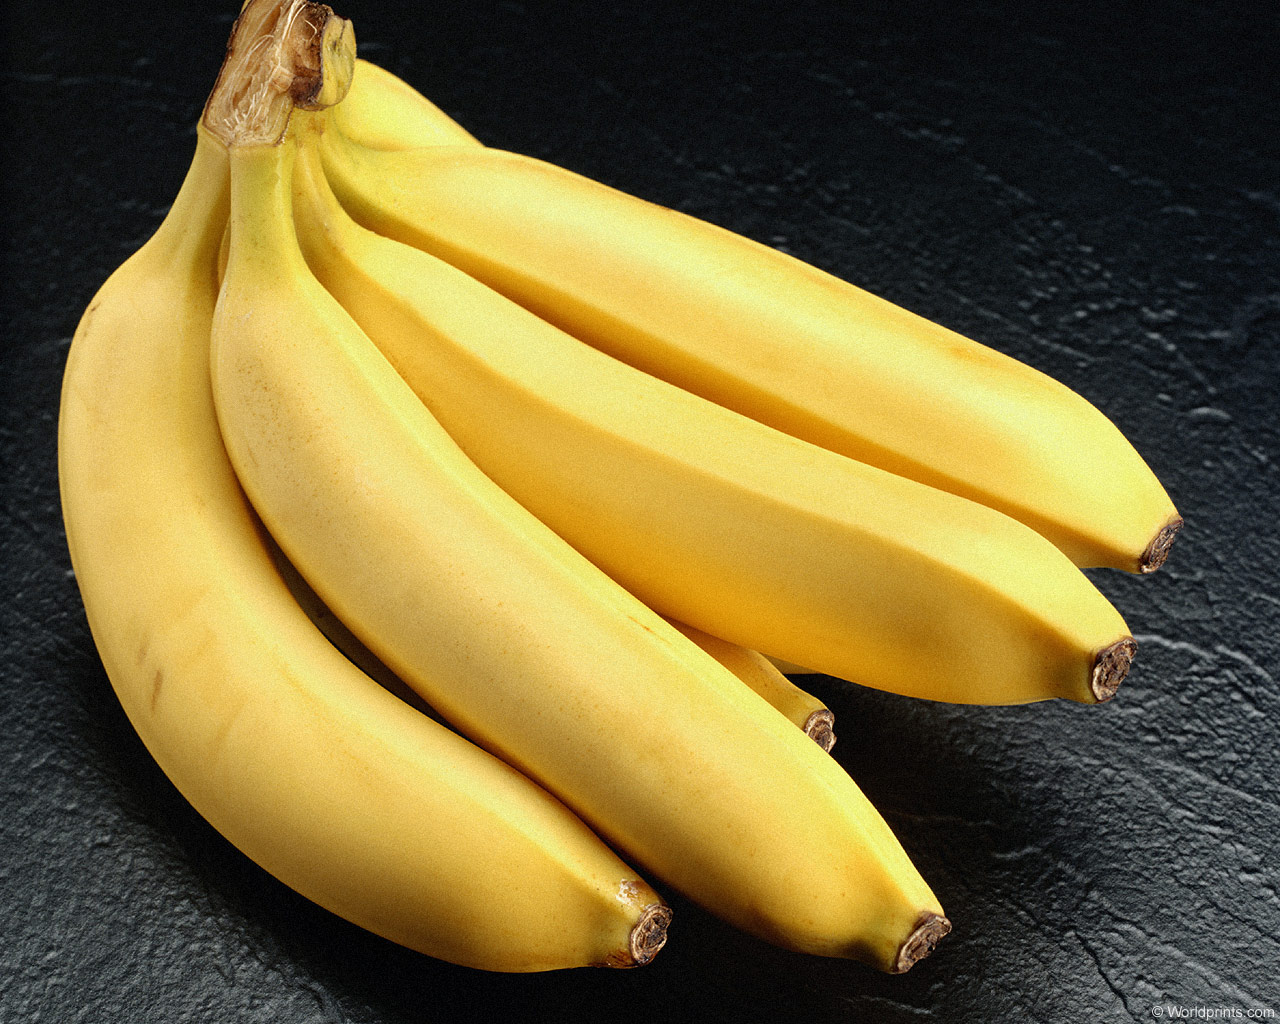 Dieta delle banane: come funziona?